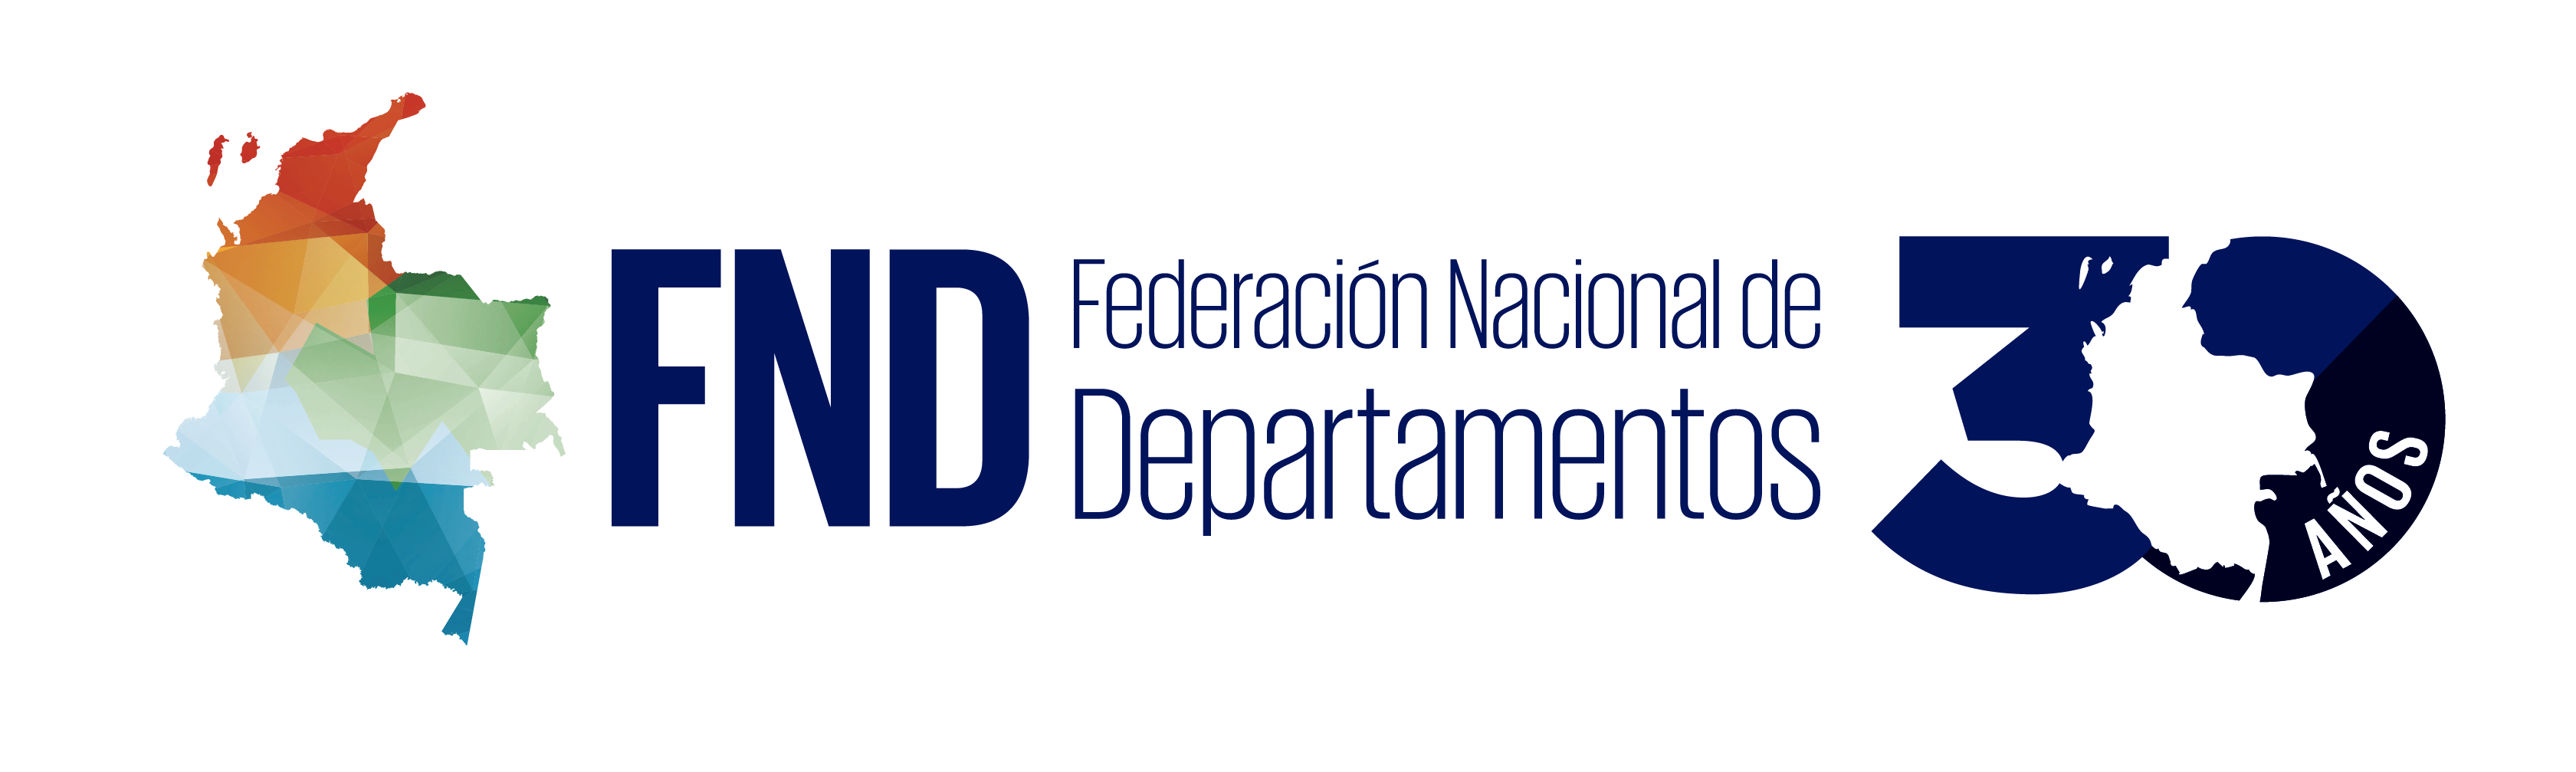 Logo de la Federación Nacional de Departamentos